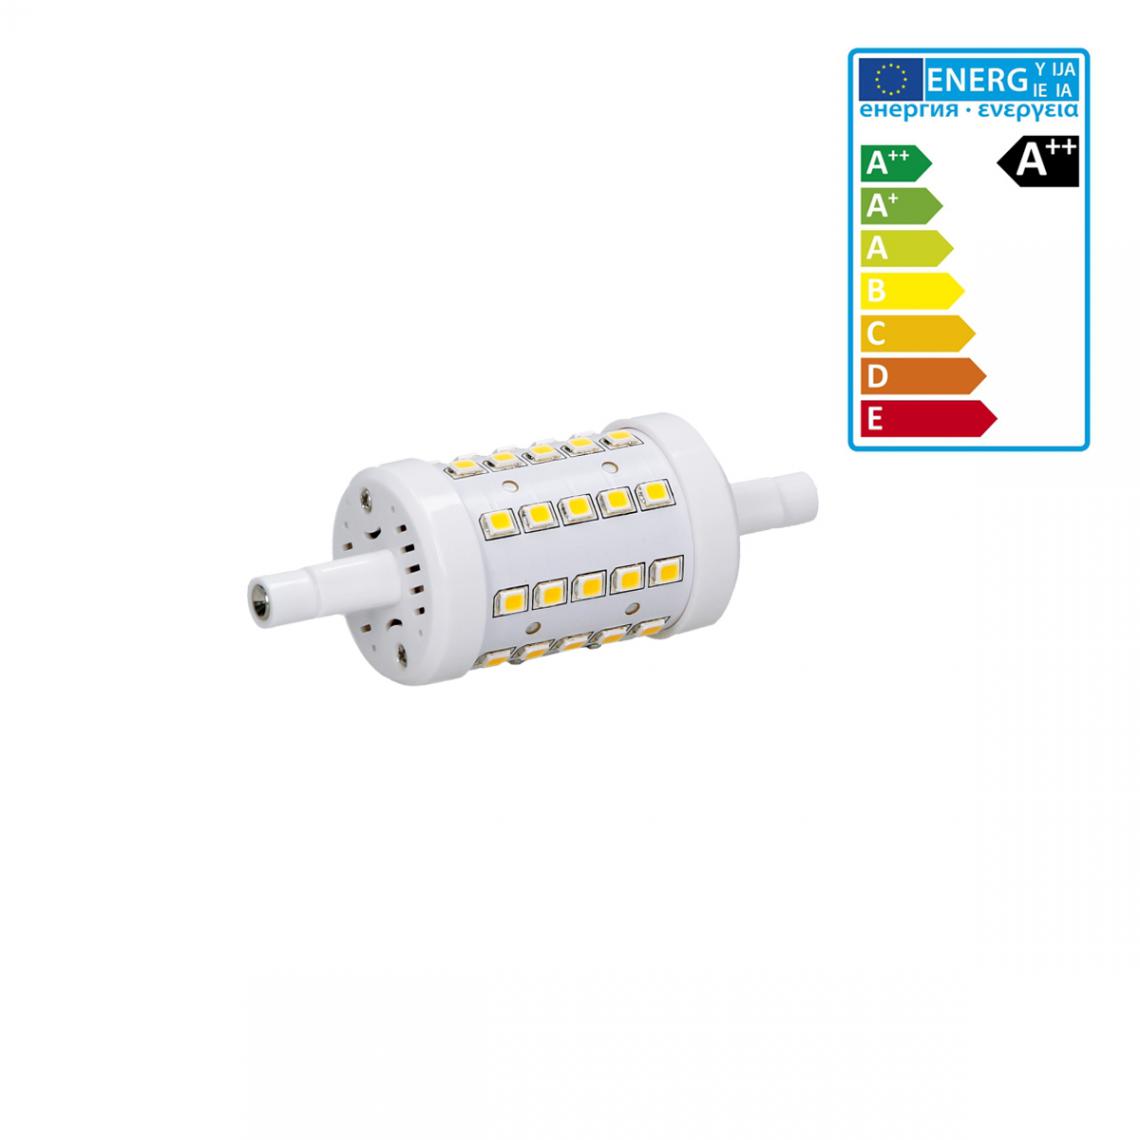 Ecd Germany - ECD Germany R7S Lampe LED 7W 78mm 480 lumens AC 220-240 Angle de faisceau 360 ° remplace 45W ampoule halogène réglable blanc neutre - Tubes et néons